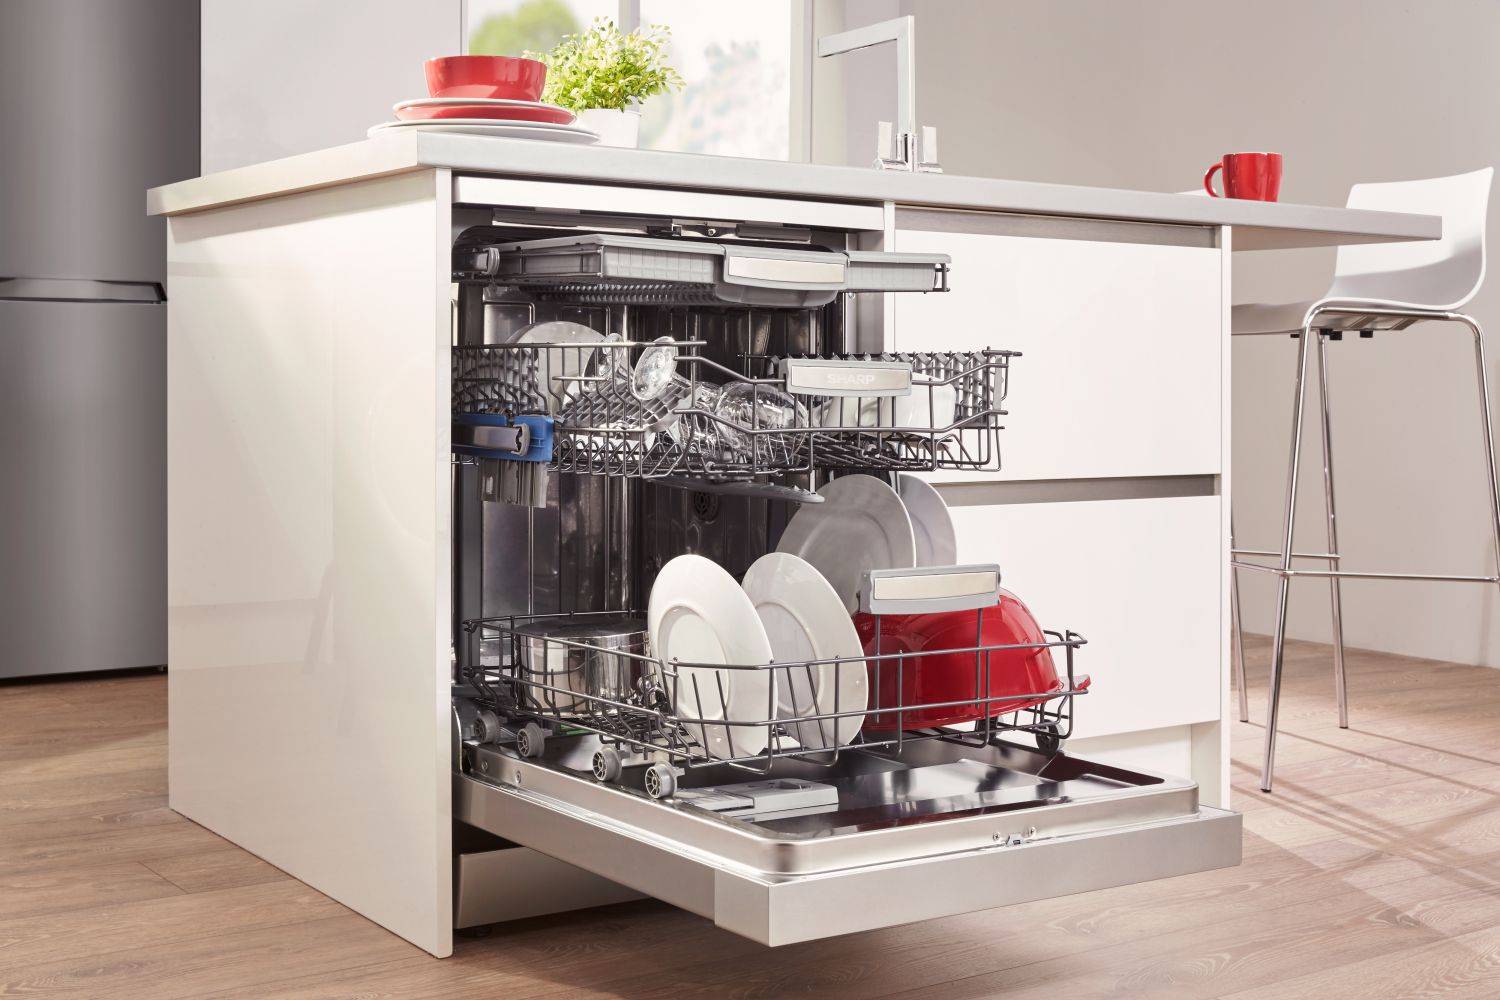 Как выбрать встраиваемую посудомоечную машину: главные критерии выбора и советы покупателям, рейтинг лучших моделей